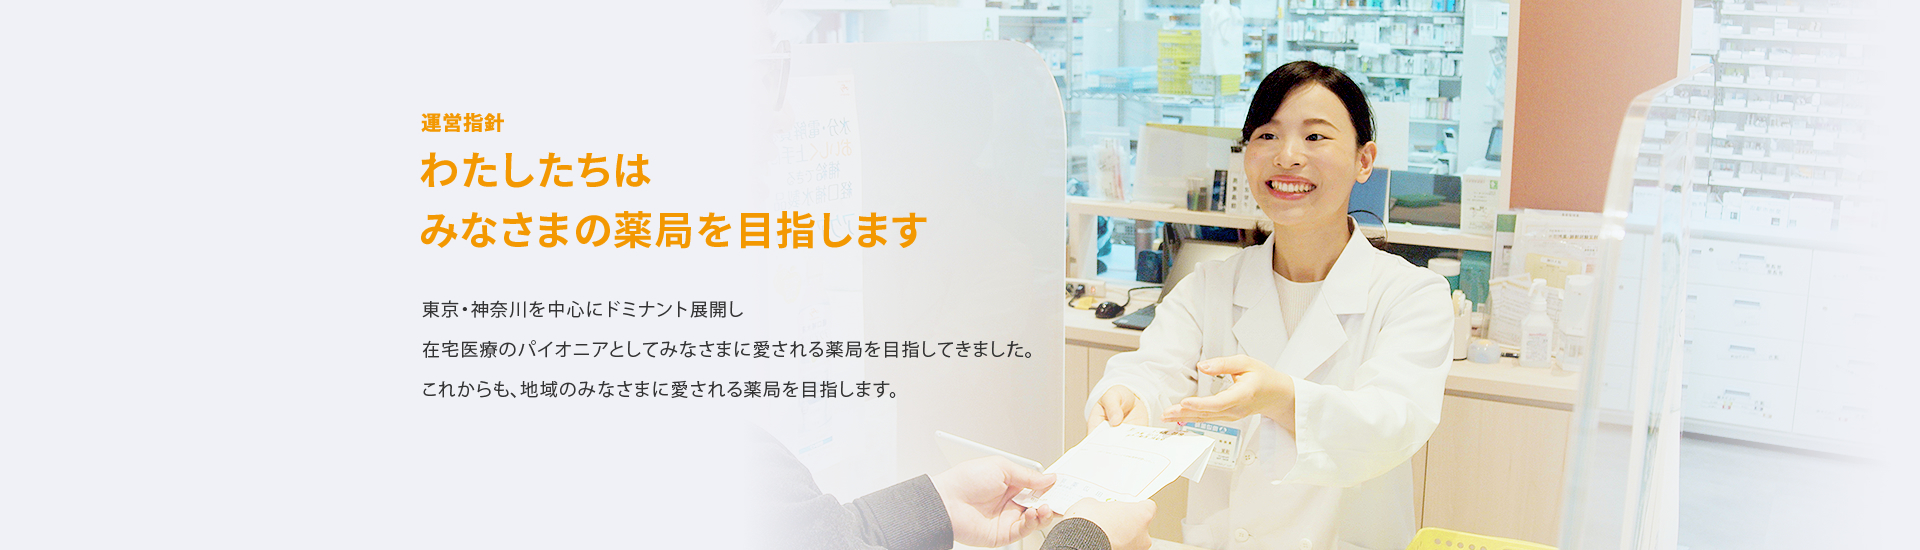 わたしたちはみなさまの薬局を目指します 東京・神奈川を中心にドミナント展開し在宅医療のパイオニアとしてみなさまに愛される薬局を目指してきました。これからも、地域のみなさまに愛される薬局を目指します。